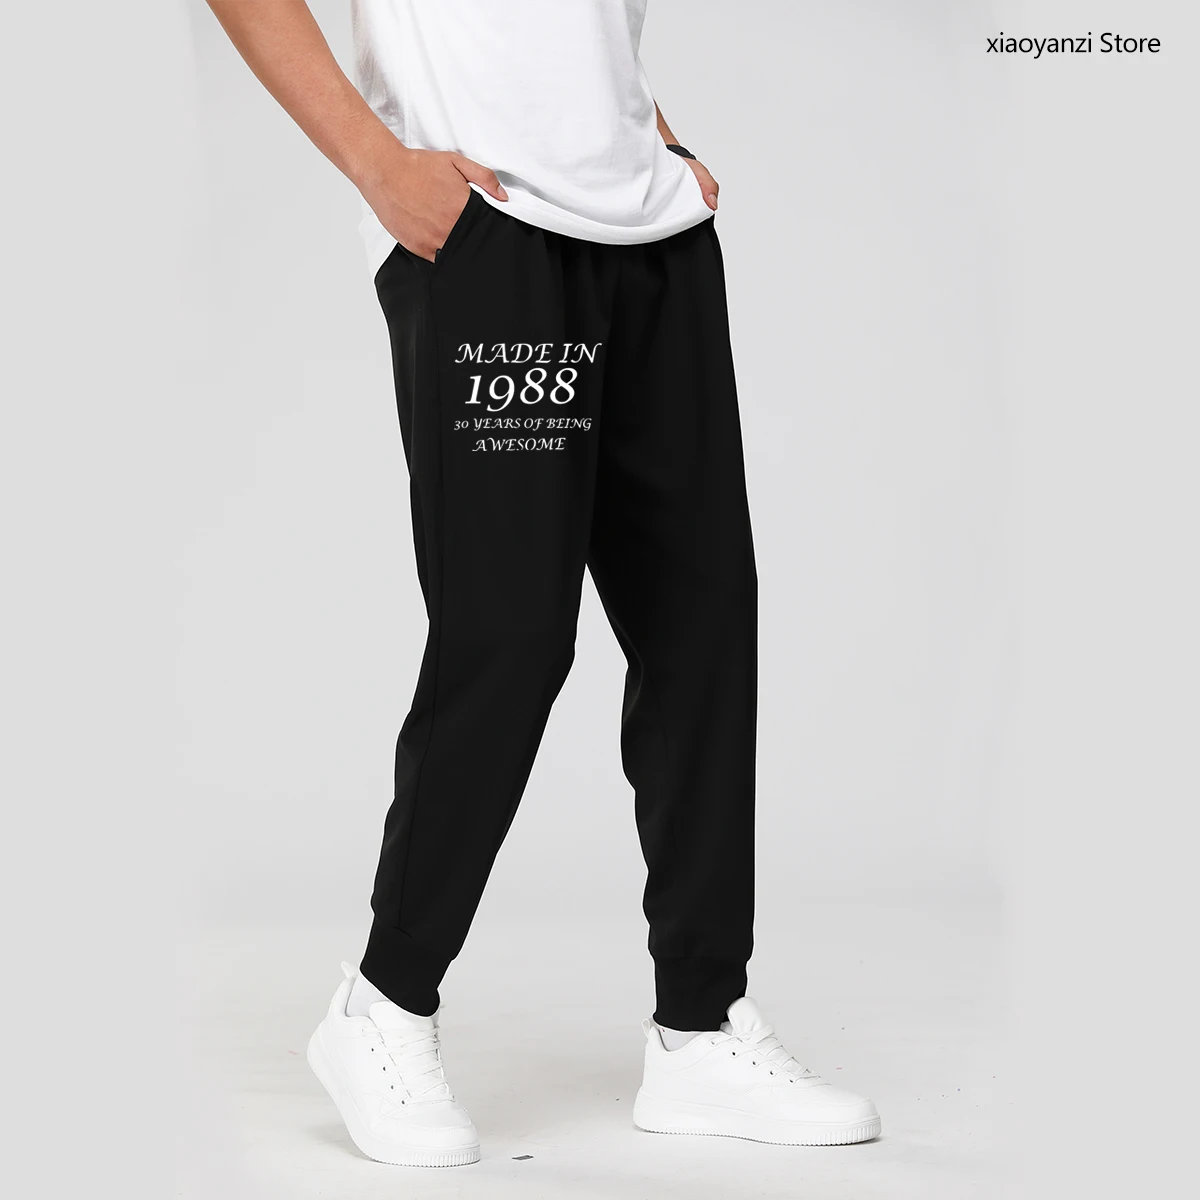 

Мужские и женские спортивные штаны Сделано в 1988 32 лет удивительные мужской одежды Фитнес длинные брюки для девочек брюки унисекс OT-914